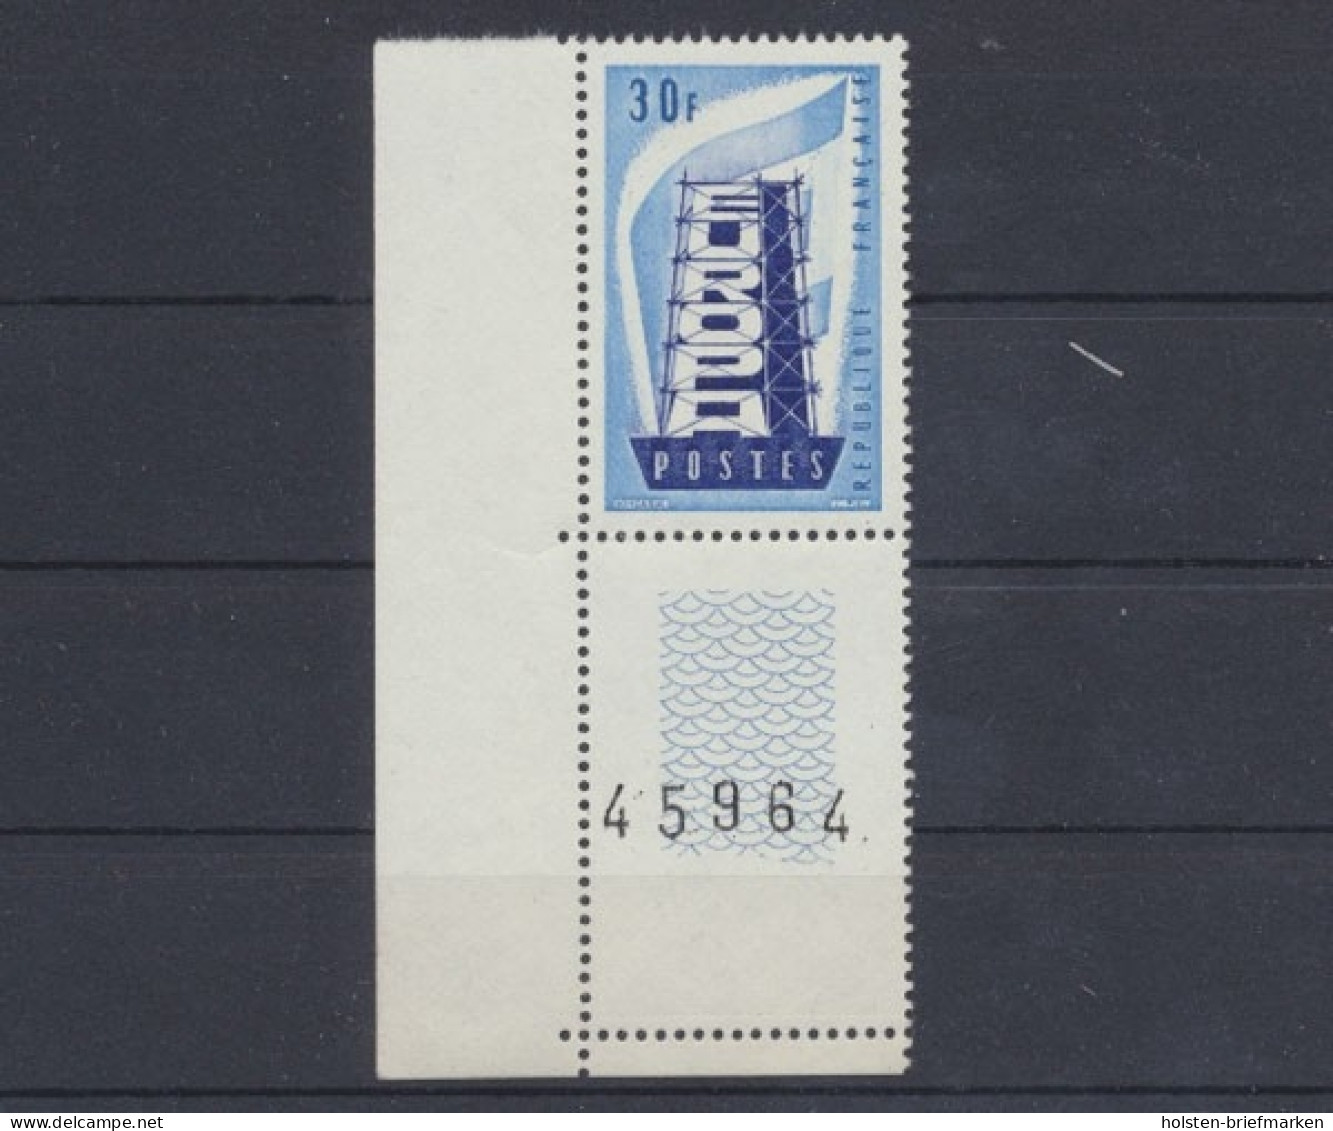 Frankreich, Michel Nr. 1105, Postfrisch - 1956